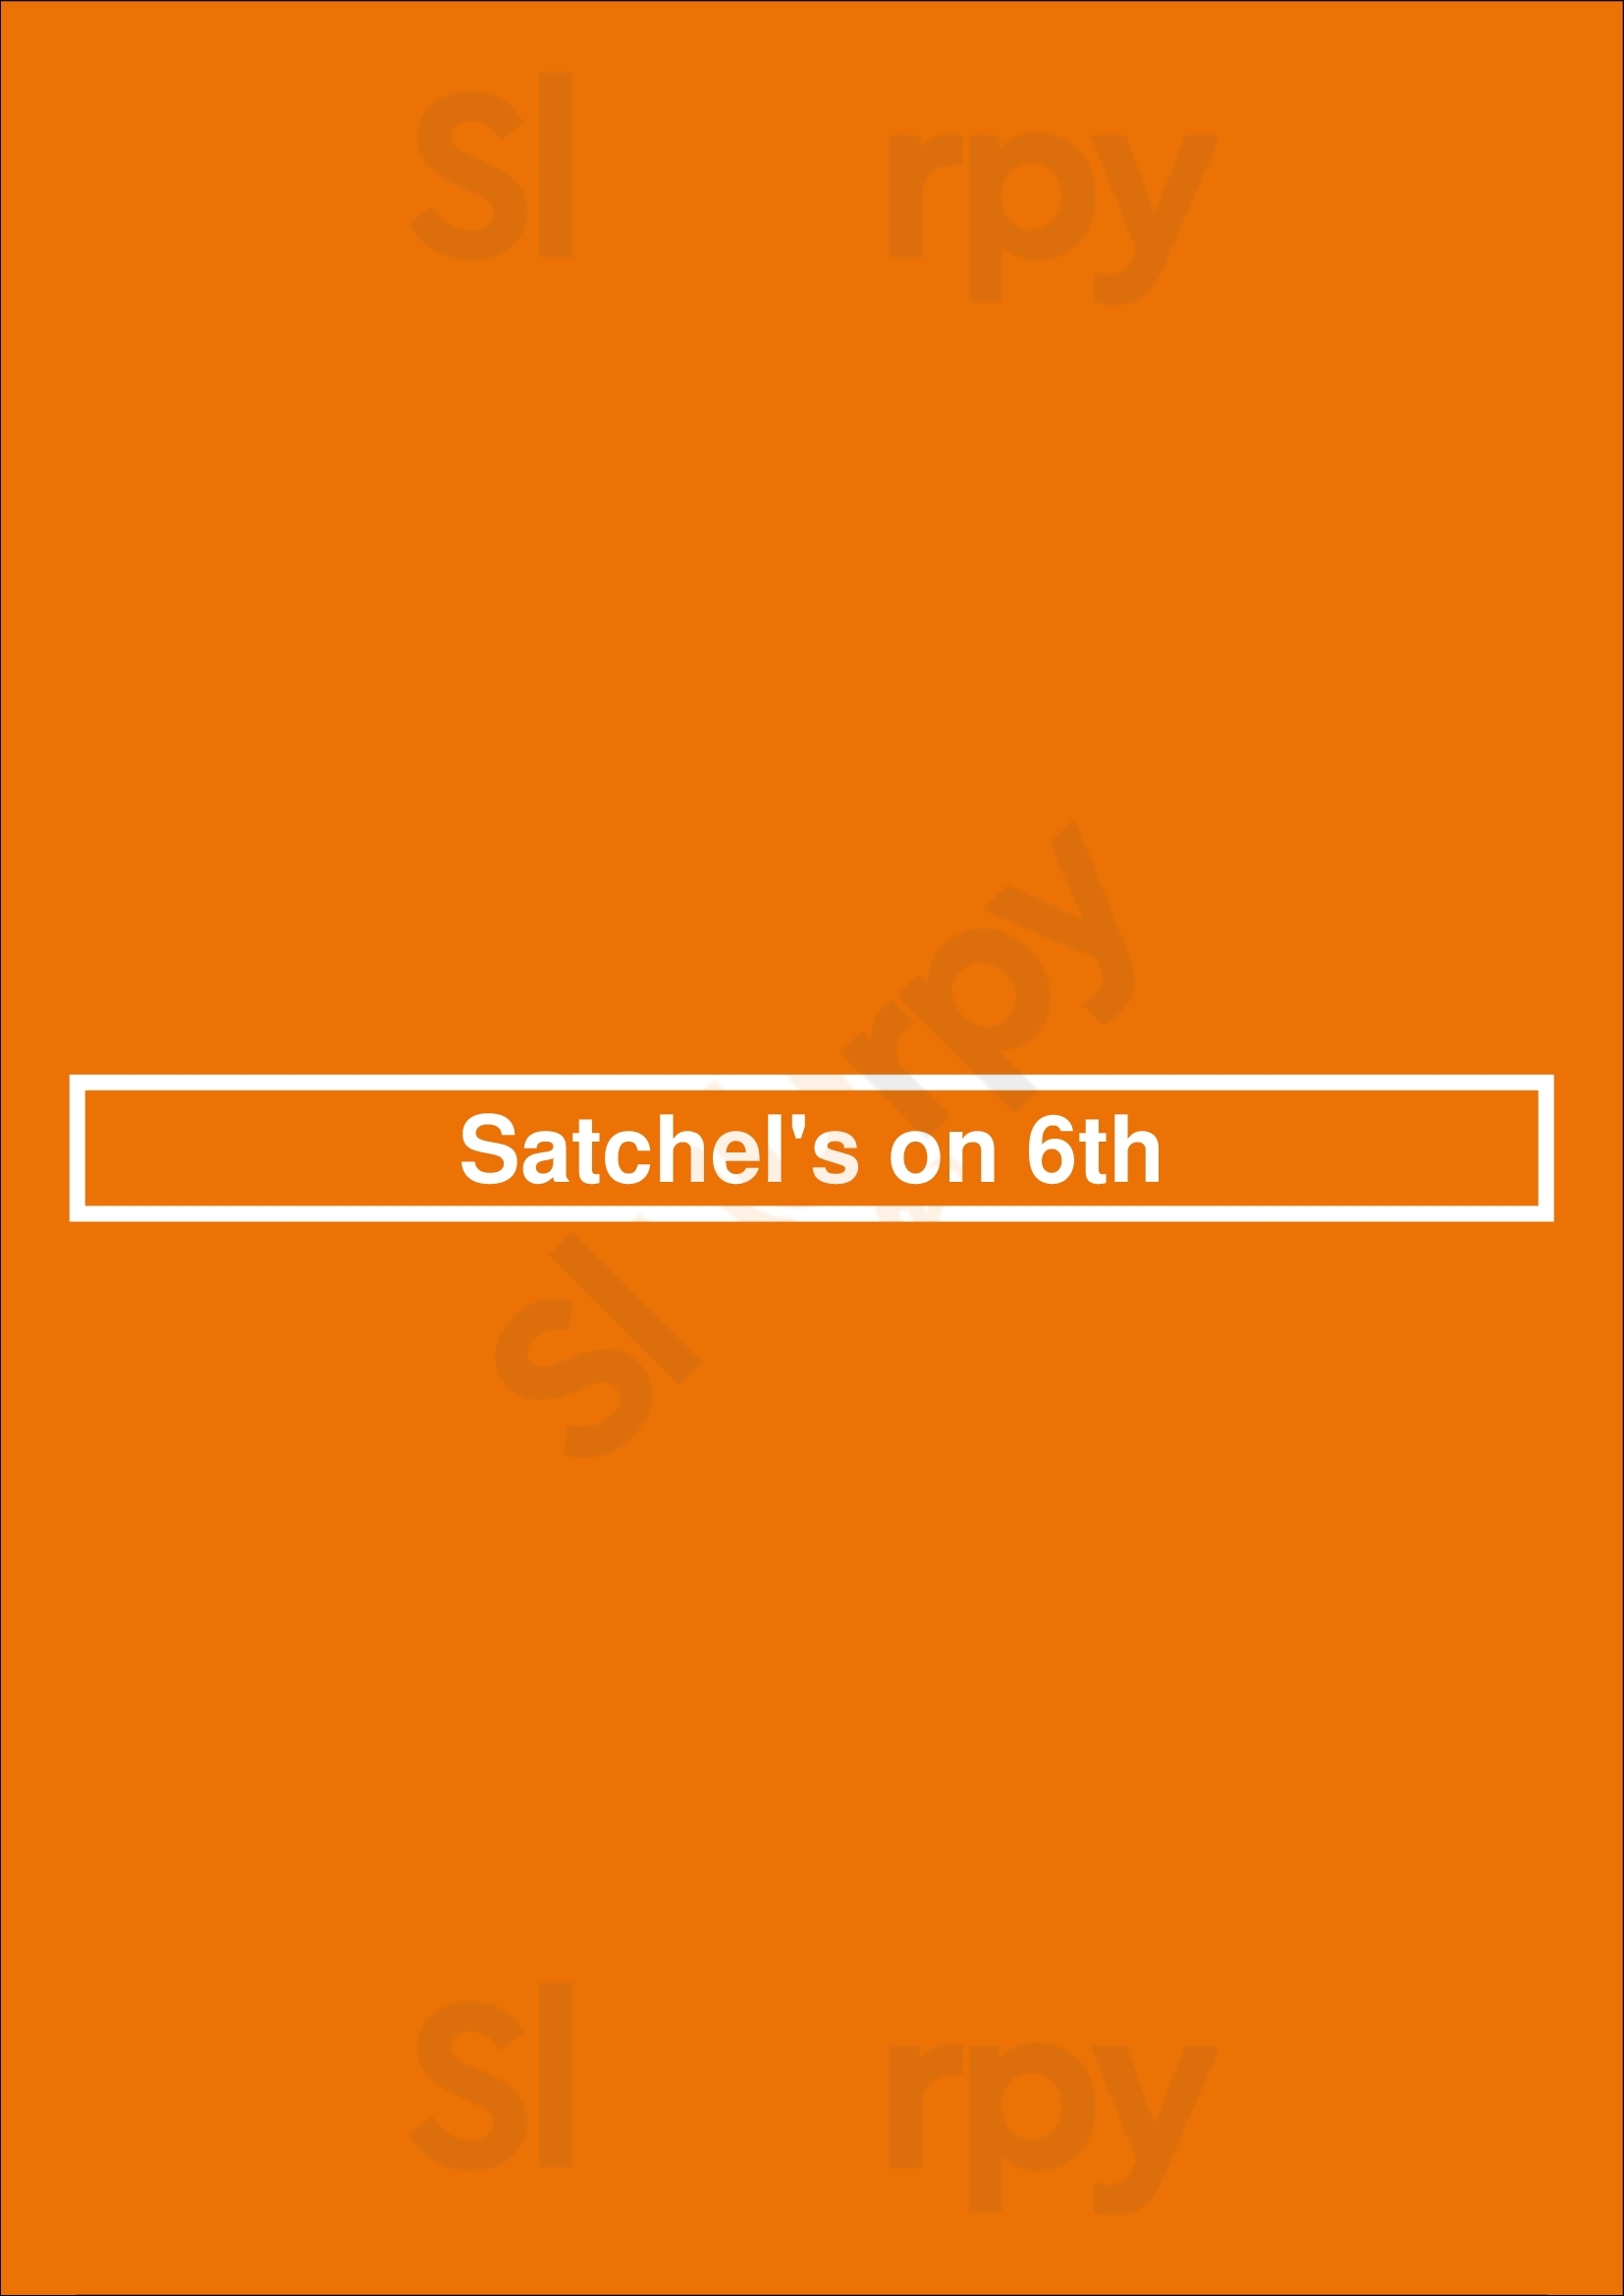 Satchel's On 6th Denver Menu - 1